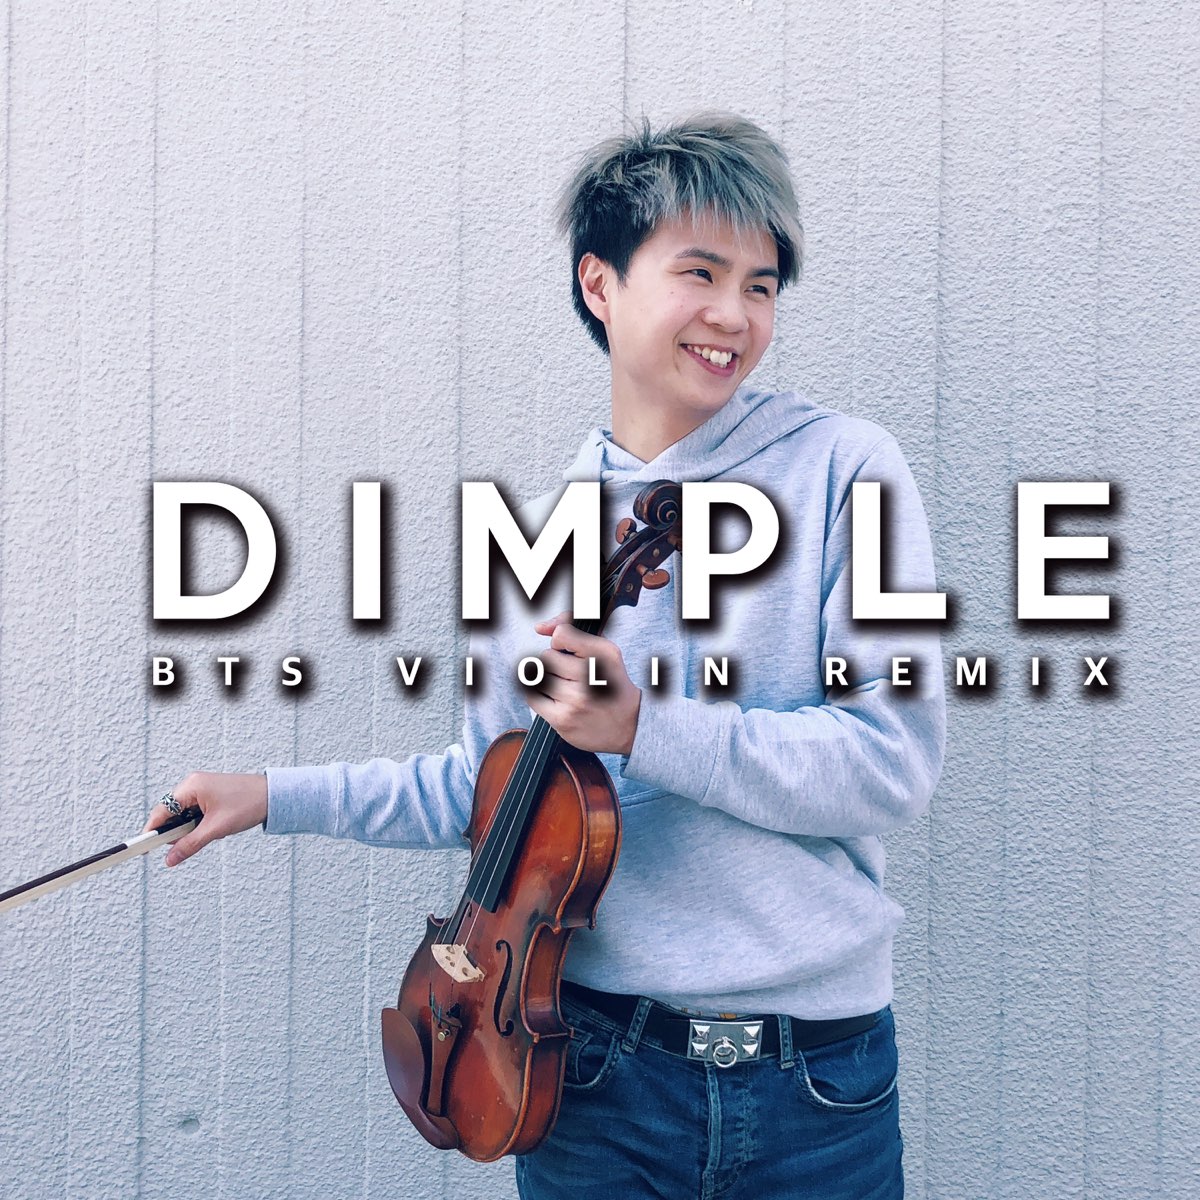 Violin remixes. Dimple BTS обложка. Dimple BTS альбом. БТС песни ремиксы. Обложка песни Dimple BTS.